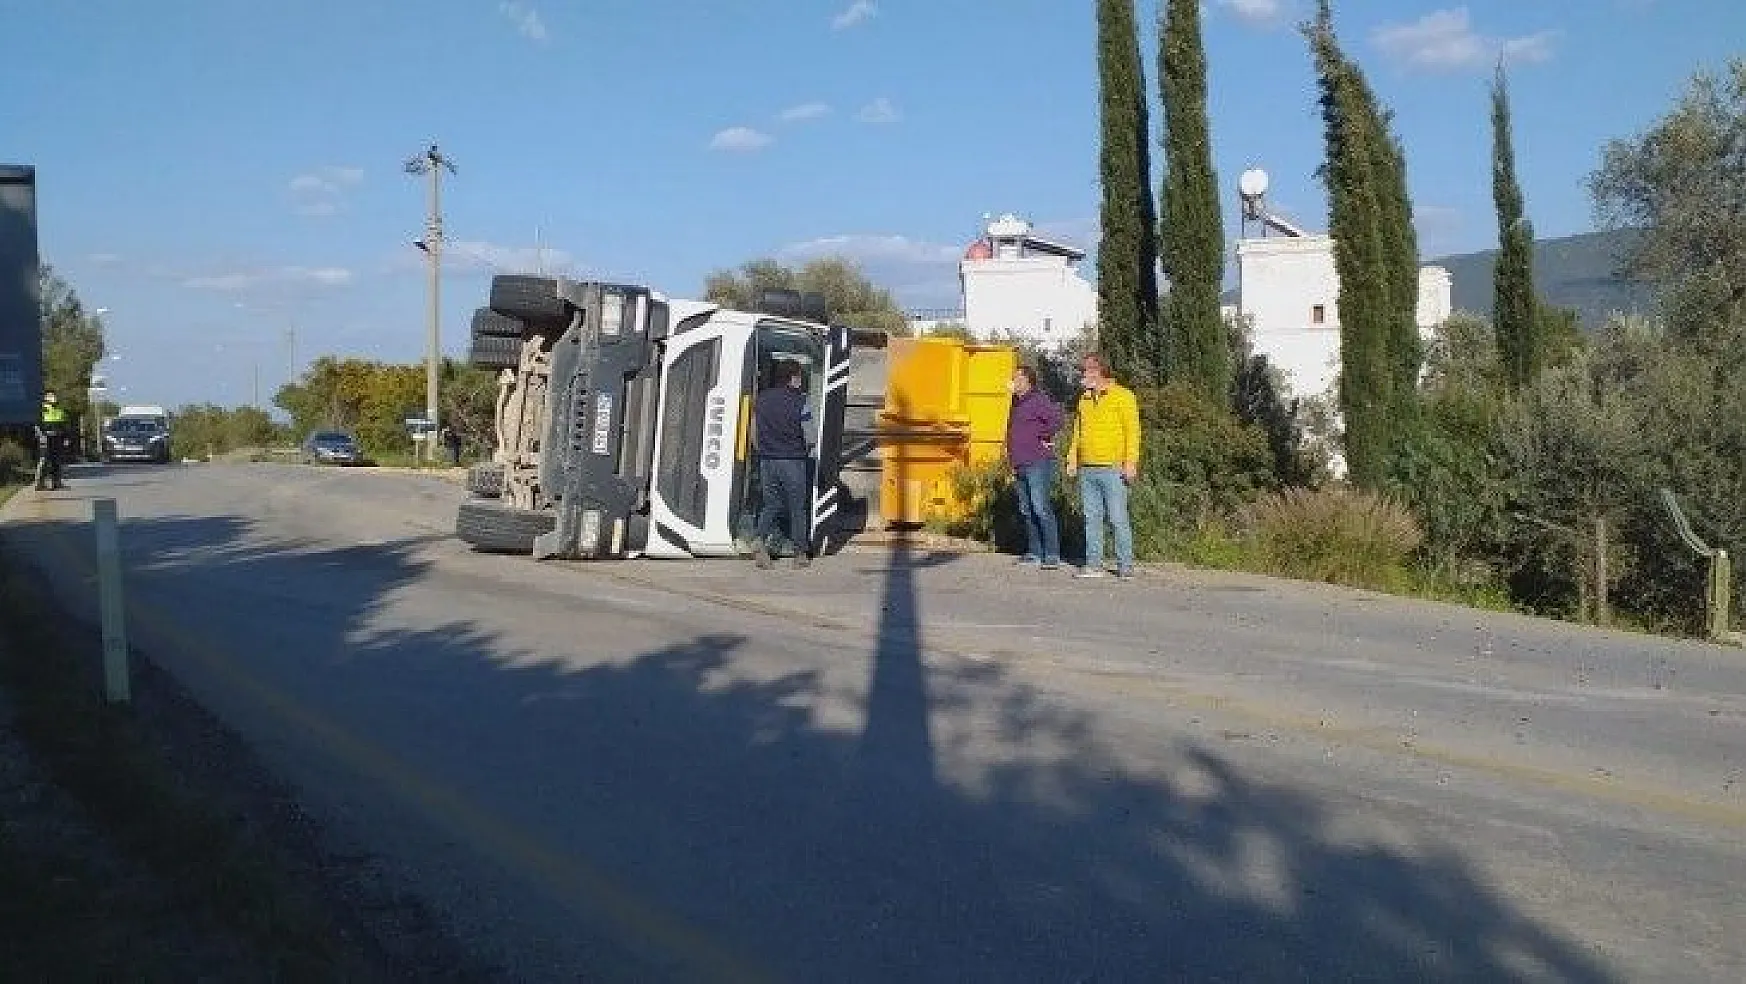 Hafriyat kamyonu devrildi: 1 yaralı